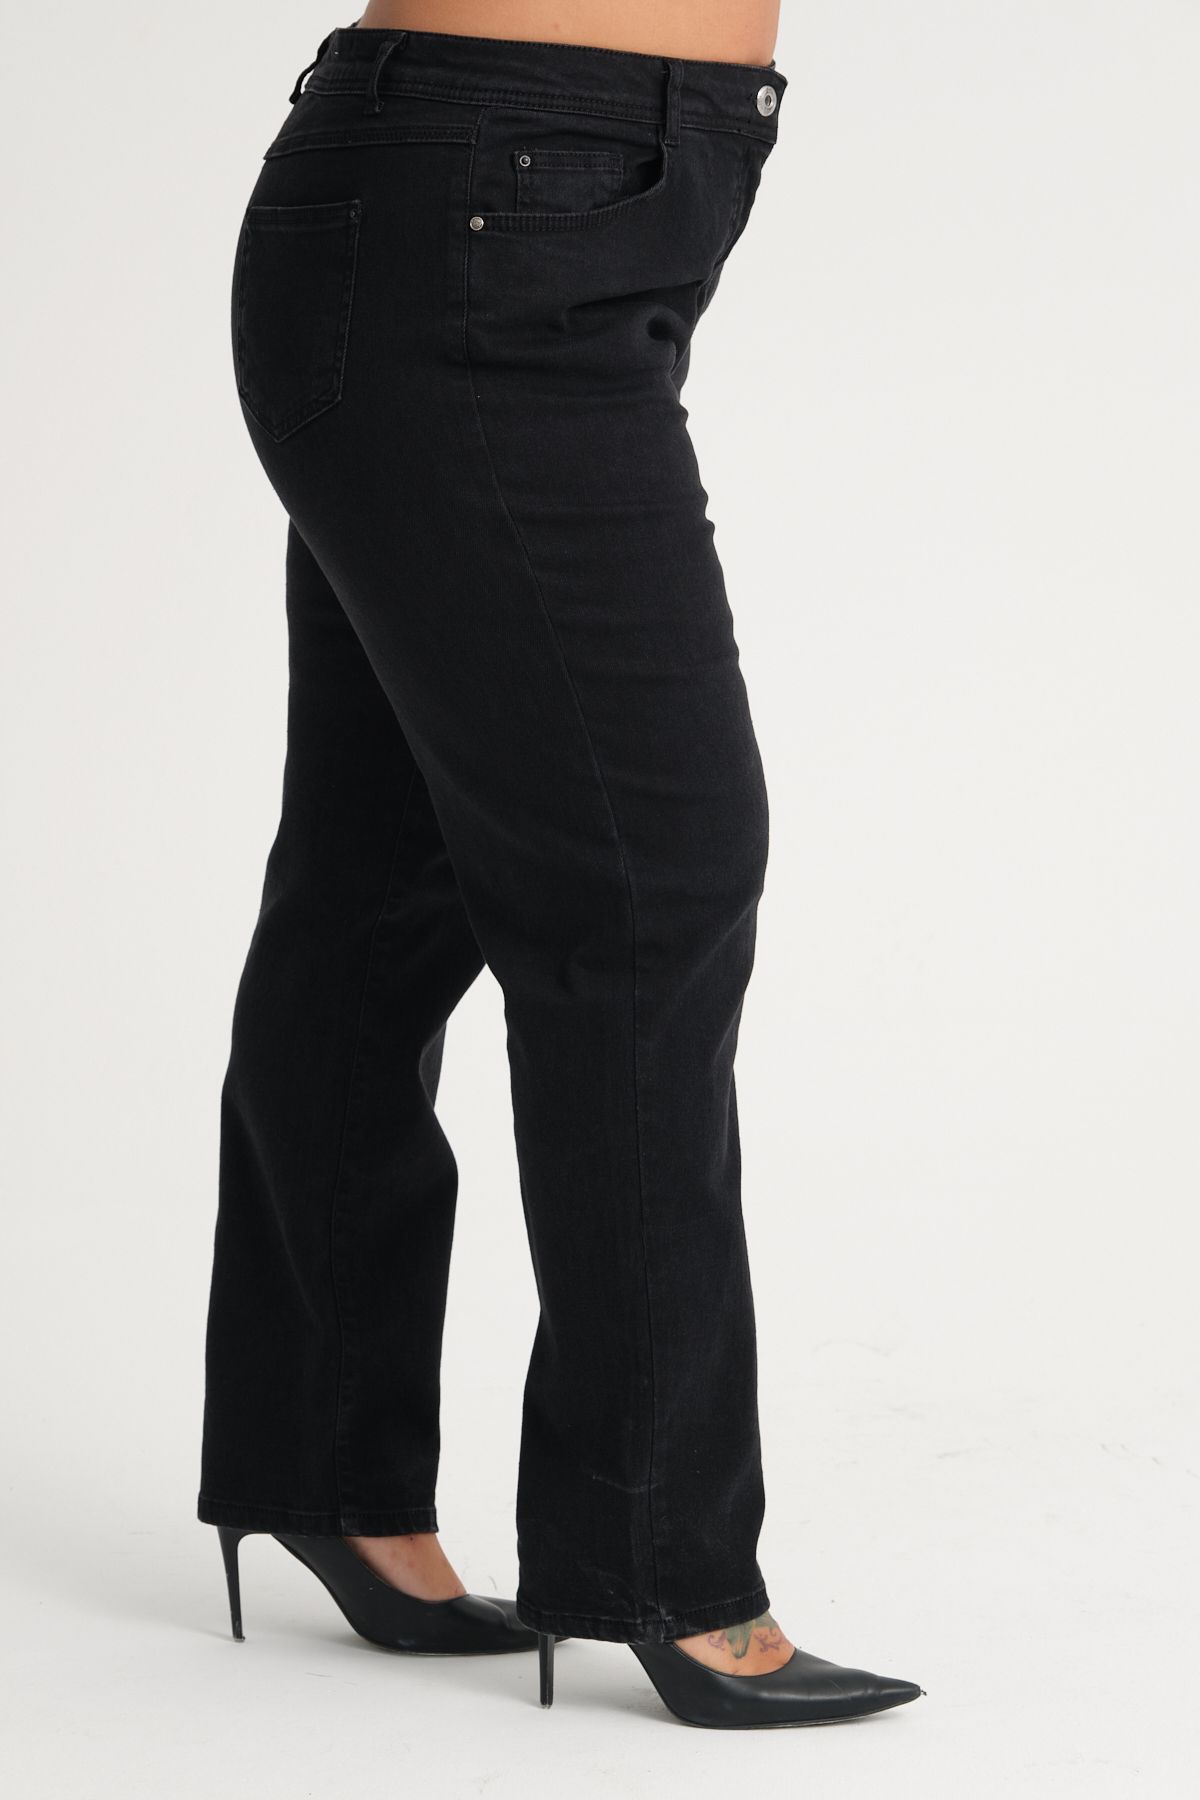 Era Lisa Battal Yüksek Bel Likralı Siyah Kadın Kot Pantolon